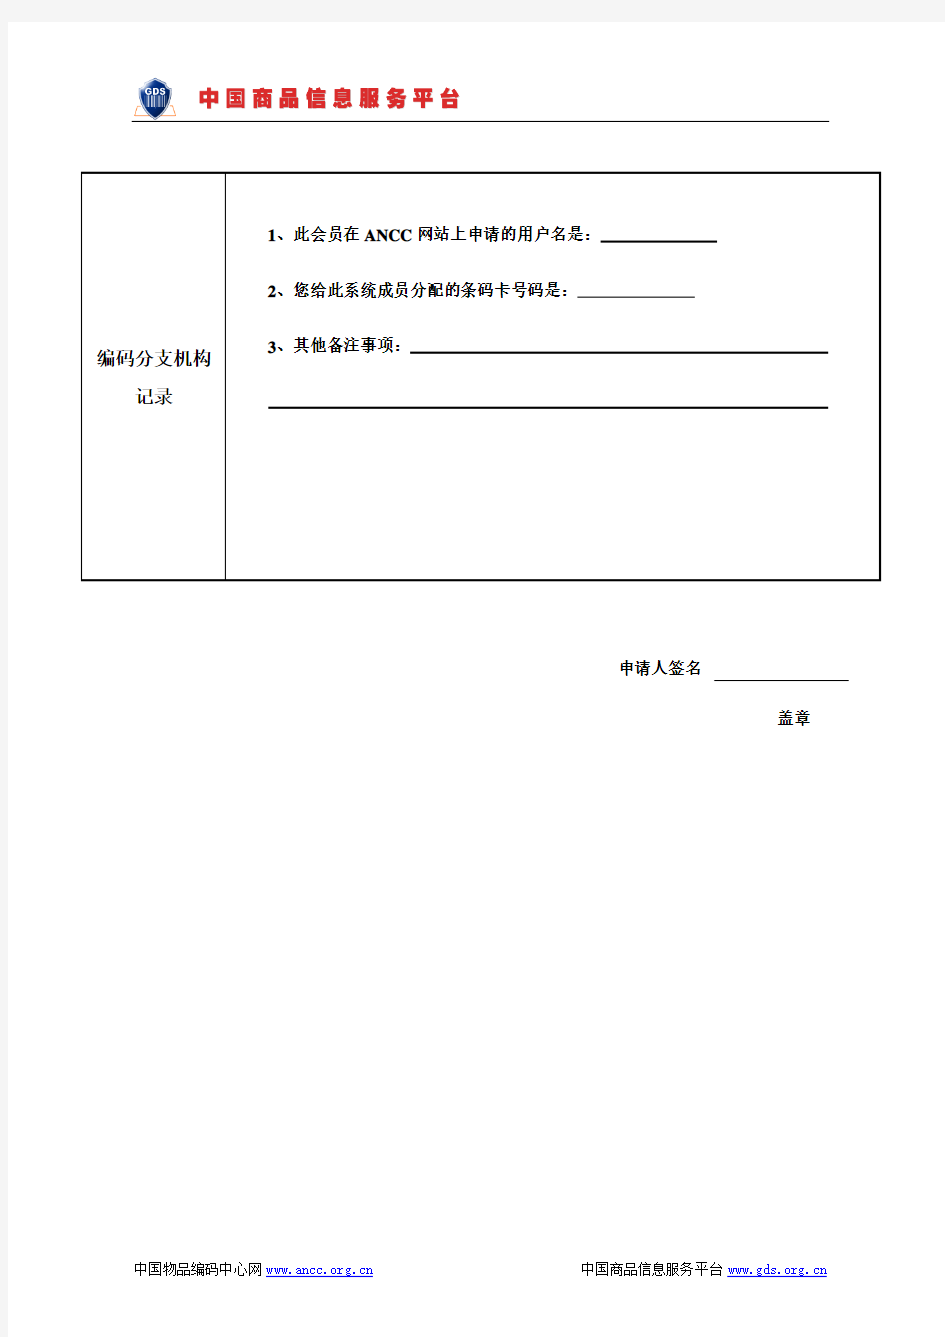 会员卡申请登记表-中国物品编码中心